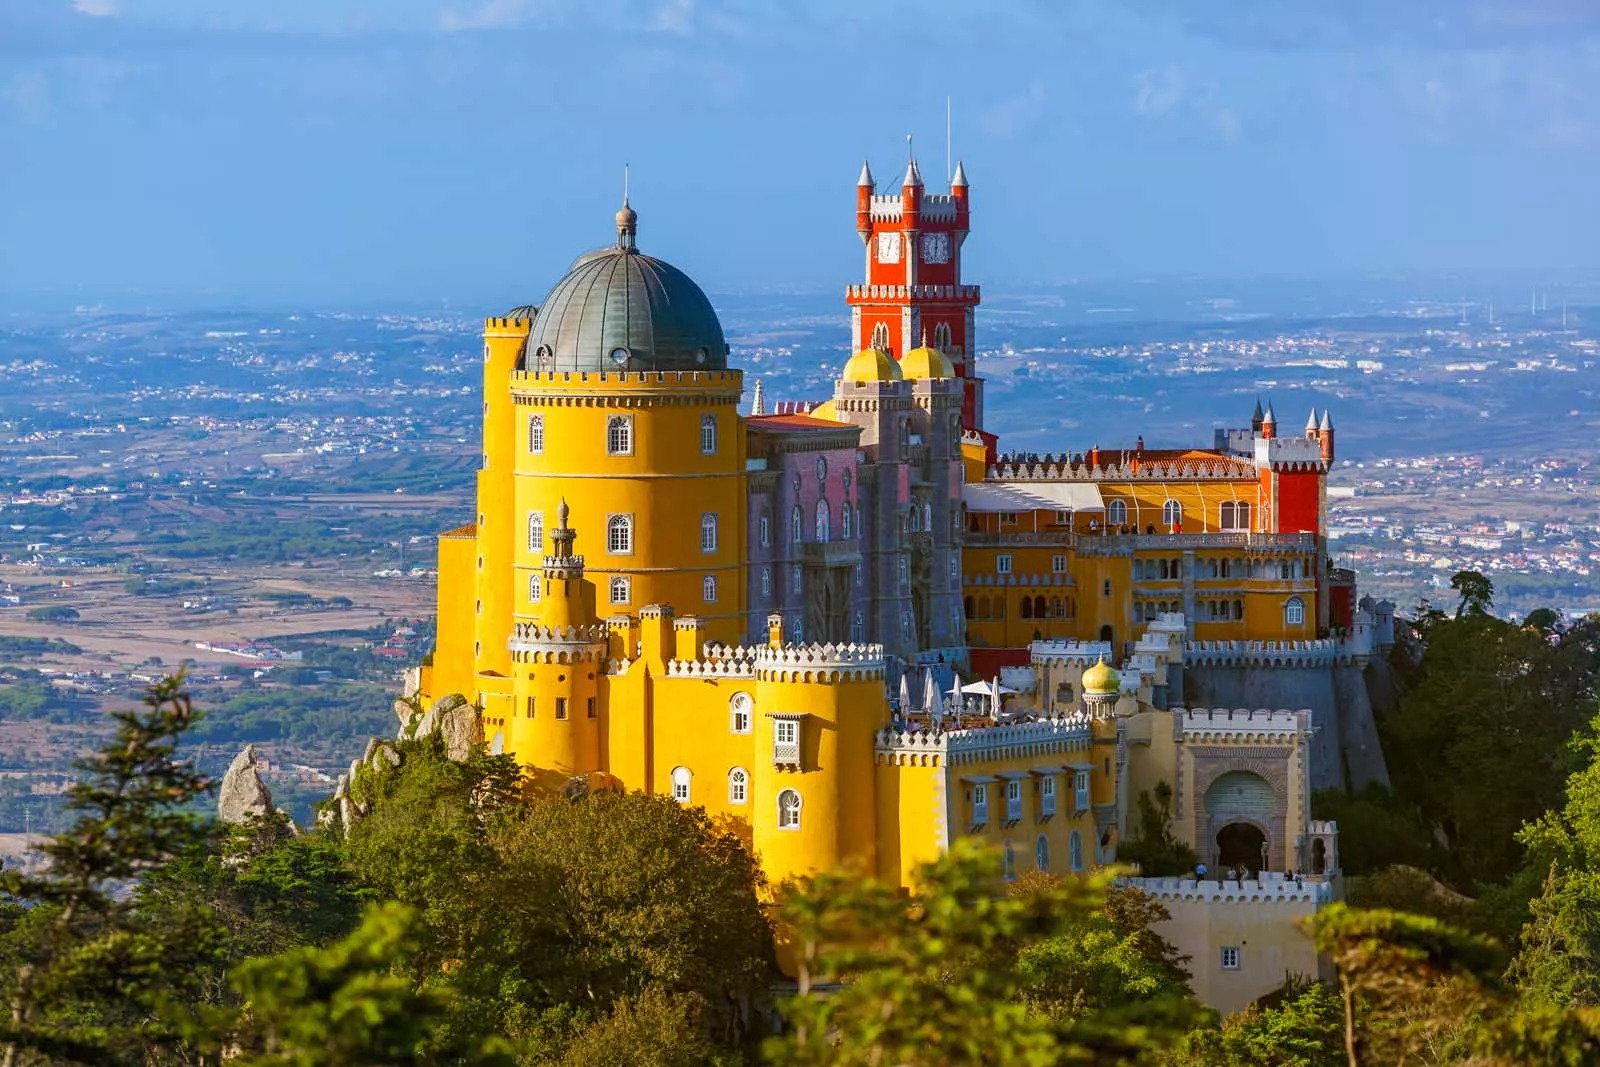 Bí mật Sintra - Nơi của những lâu đài và cung điện huyền diệu nhất thế giới - 3